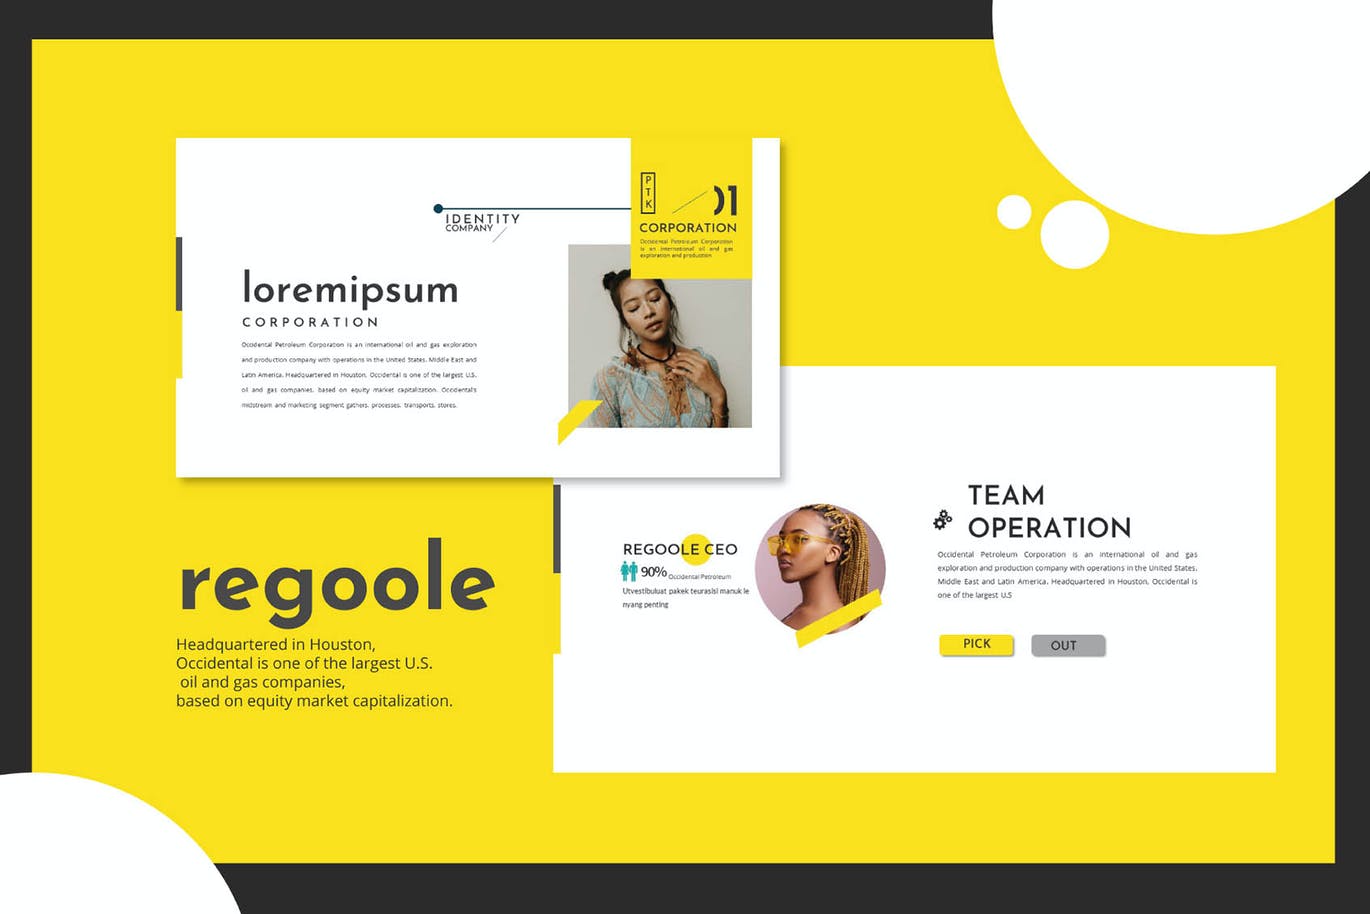 工作室团队成员介绍黄色主题Powerpoint模板 Regoole – PowerPoint Template设计素材模板